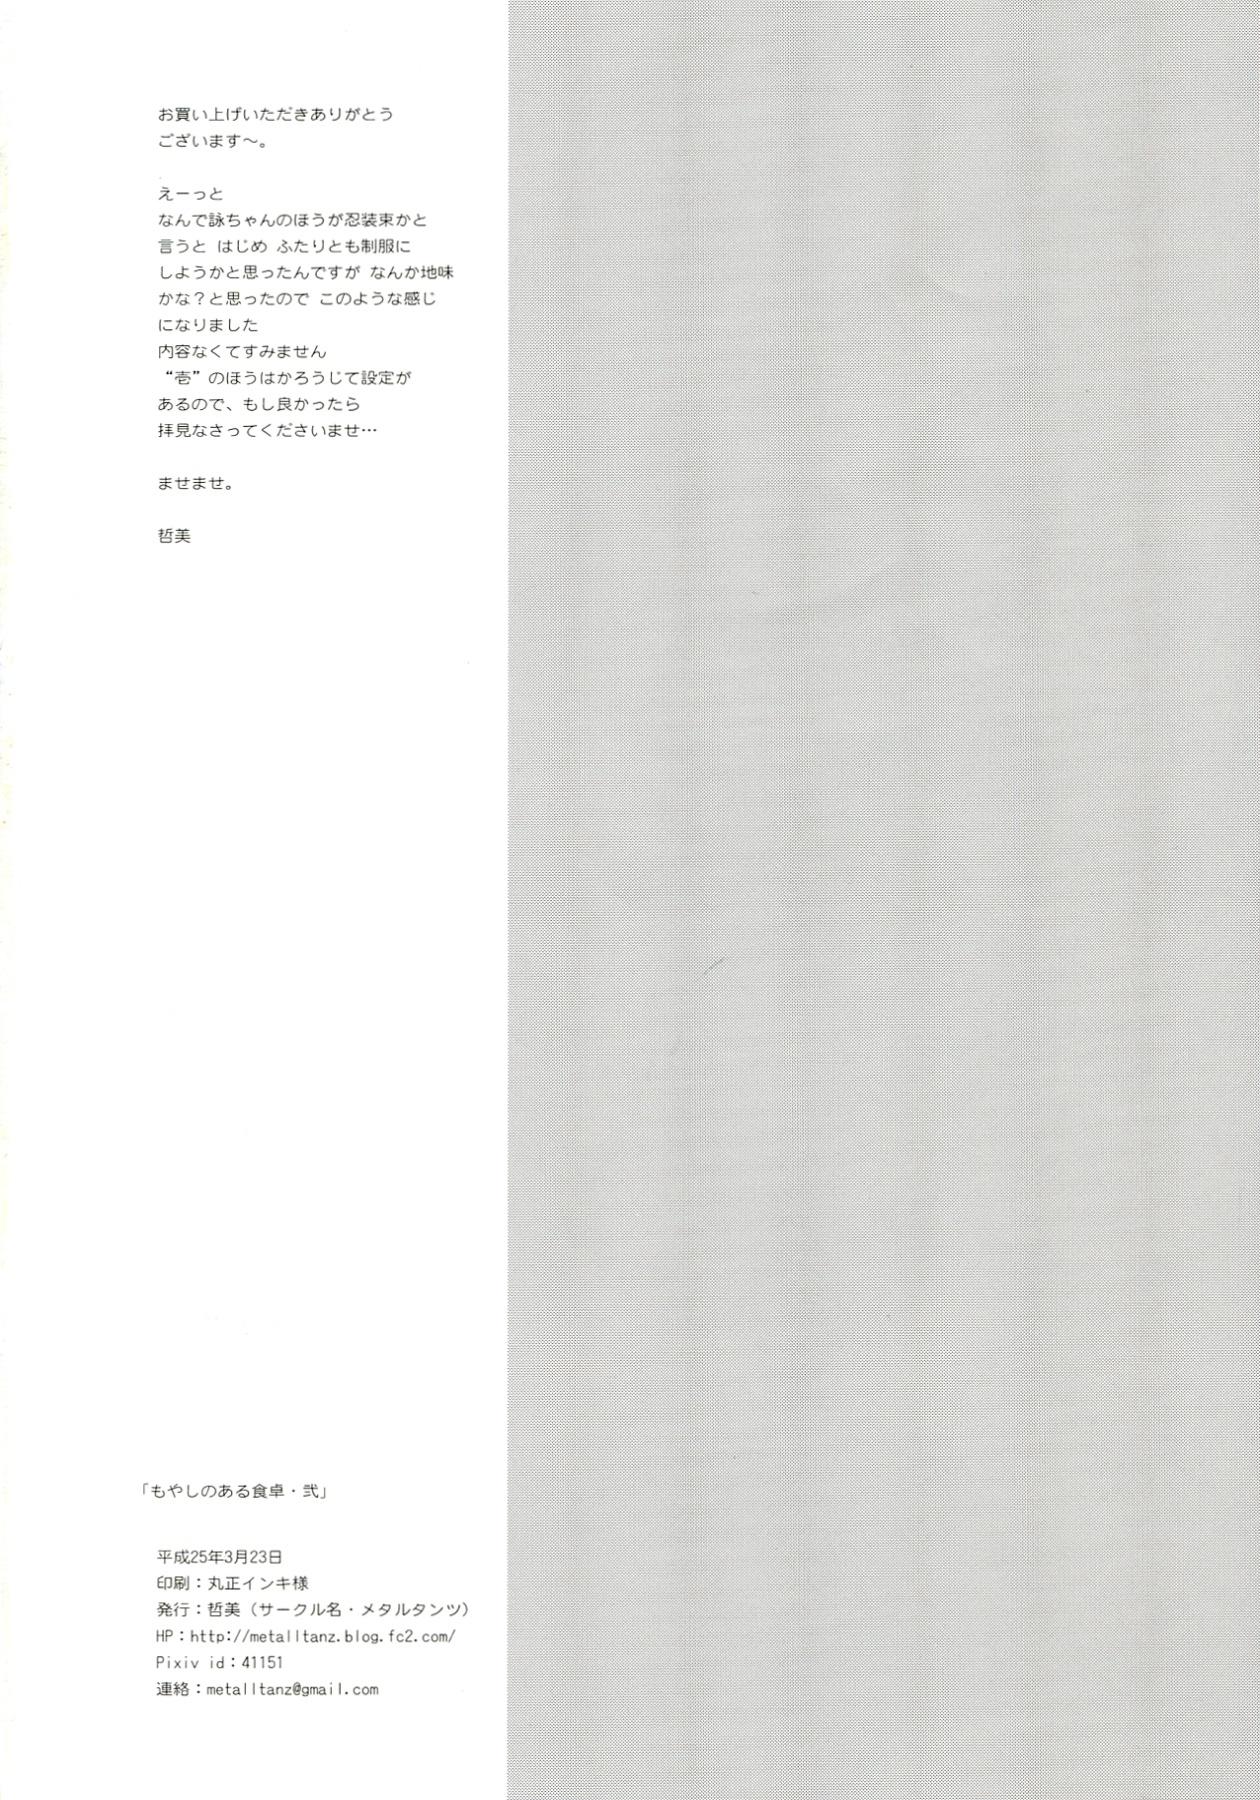 Leite Moyashi no Aru Shokutaku 2 - Senran kagura Pmv - Page 22